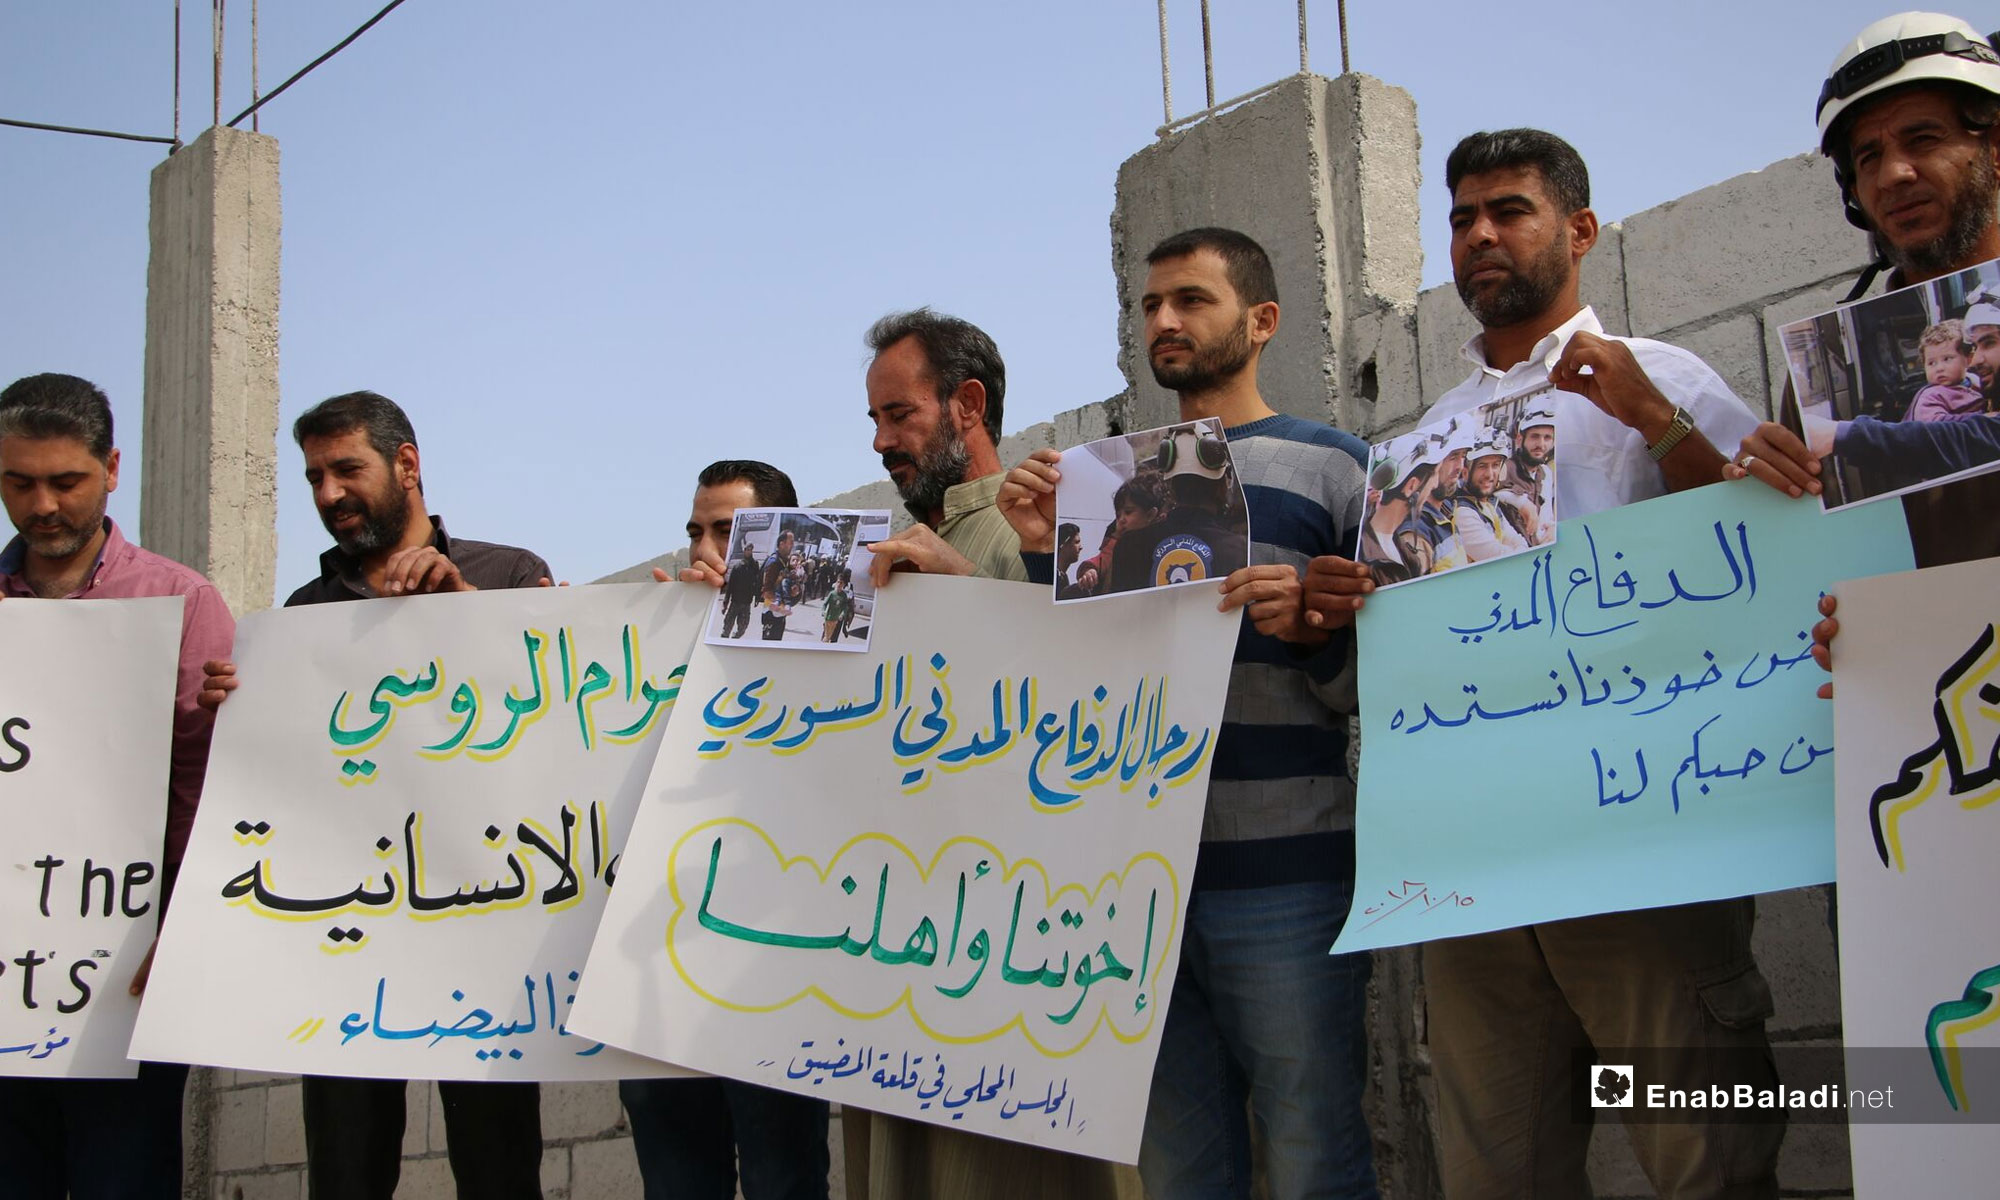 وقفات تضامنية مع الدفاع المدني في ريف حماة - 14 من تشرين الأول 2018 (عنب بلدي)